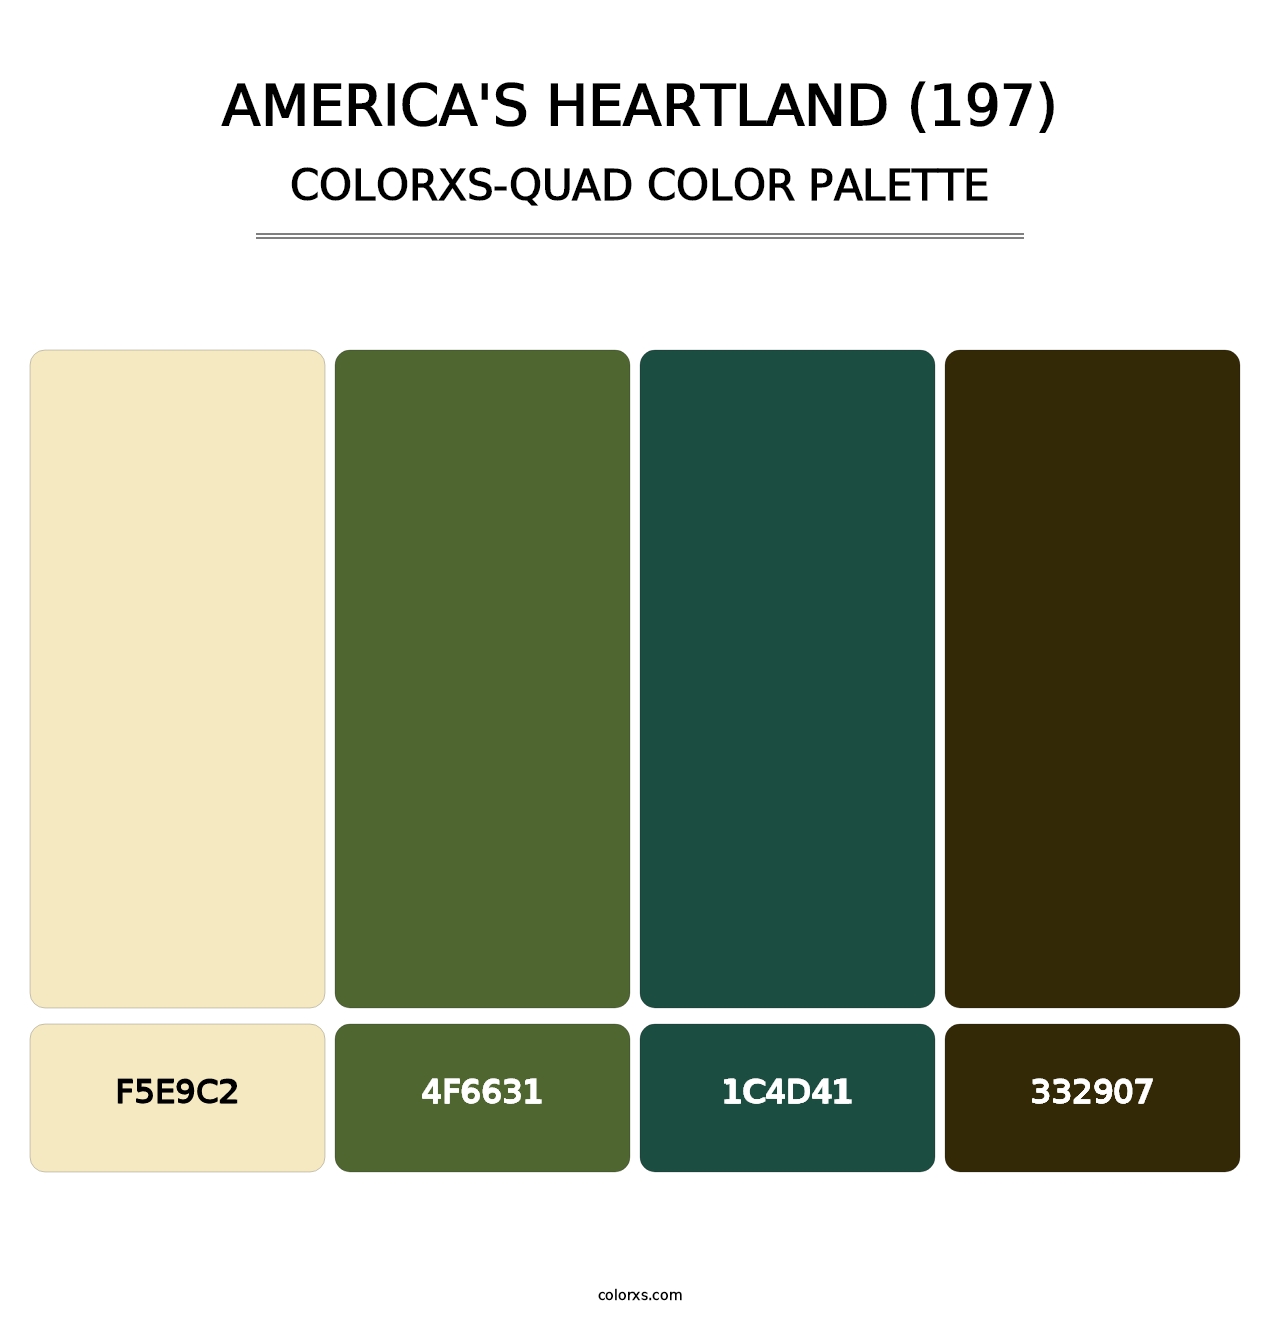 America's Heartland (197) - Colorxs Quad Palette